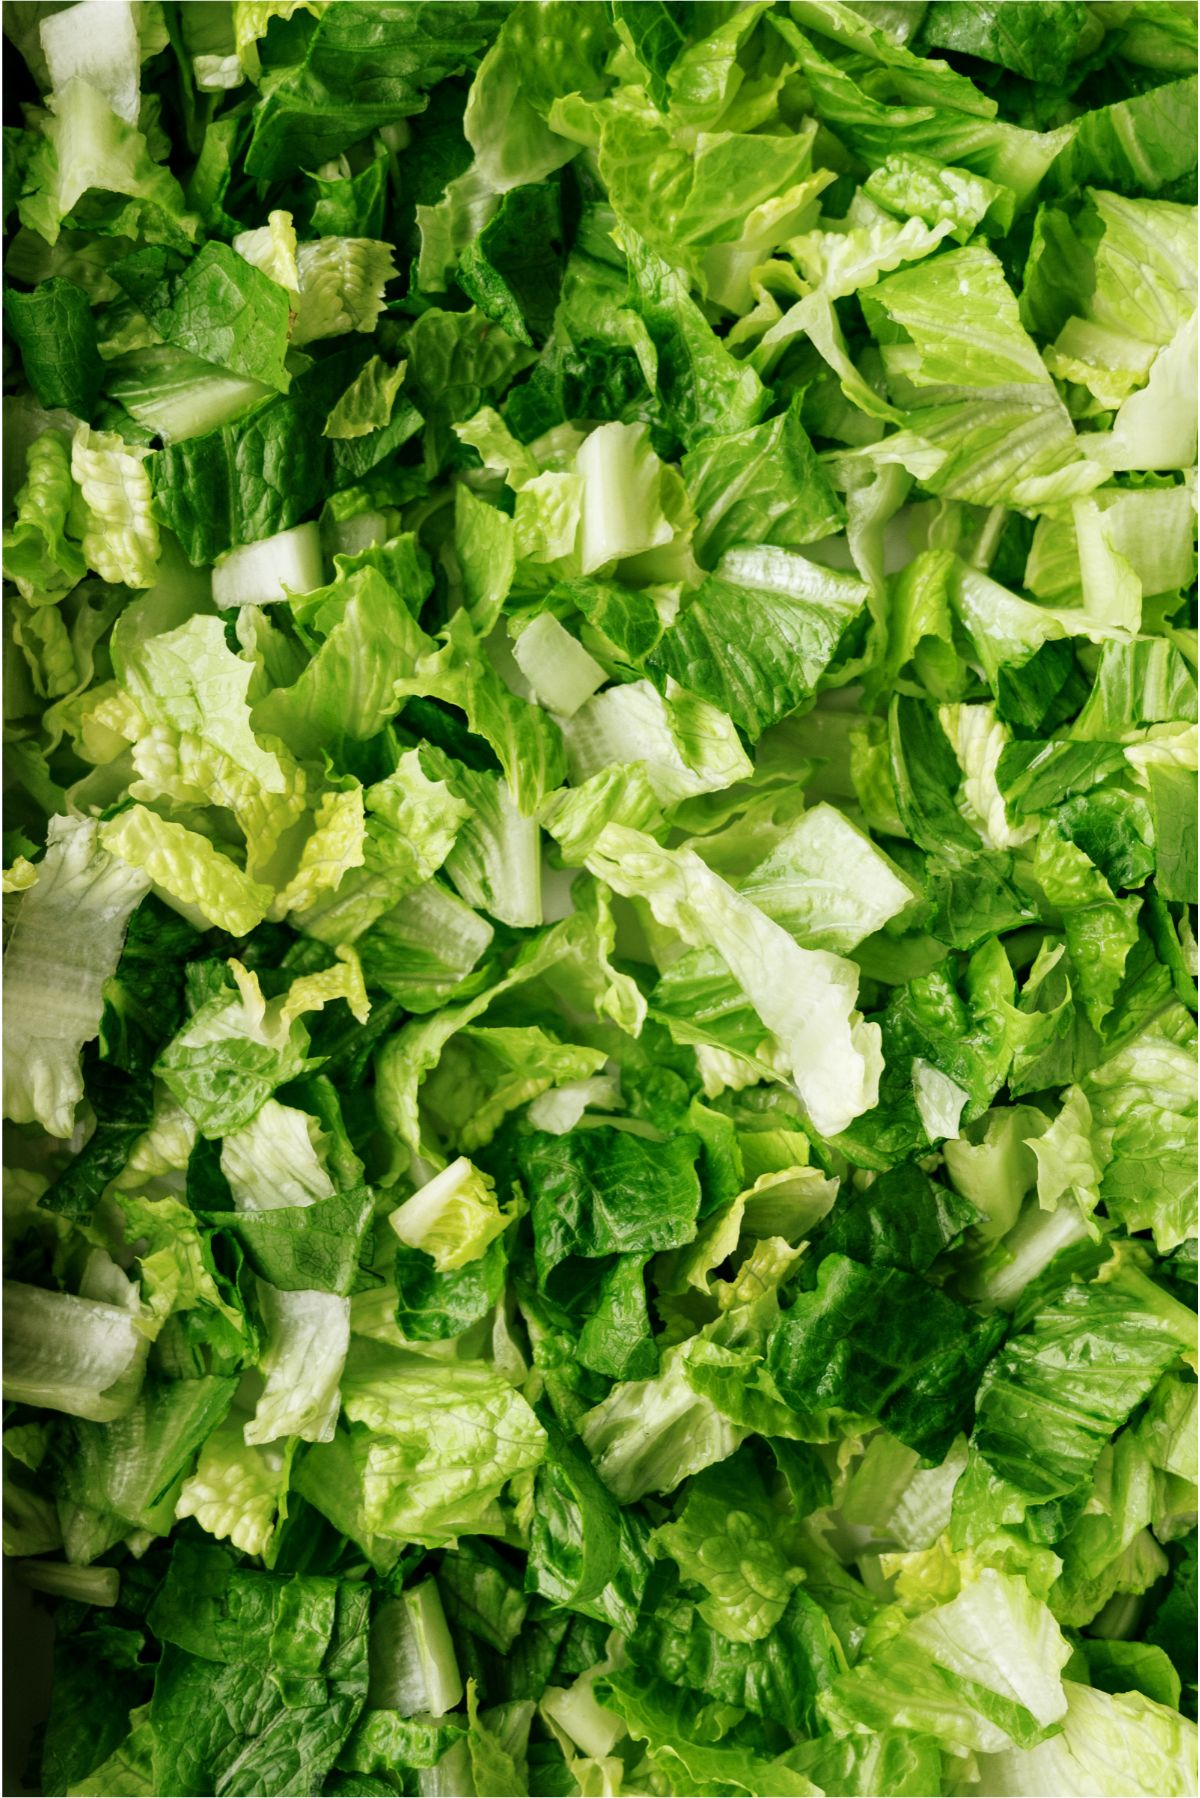 Close up of shredded lettuce